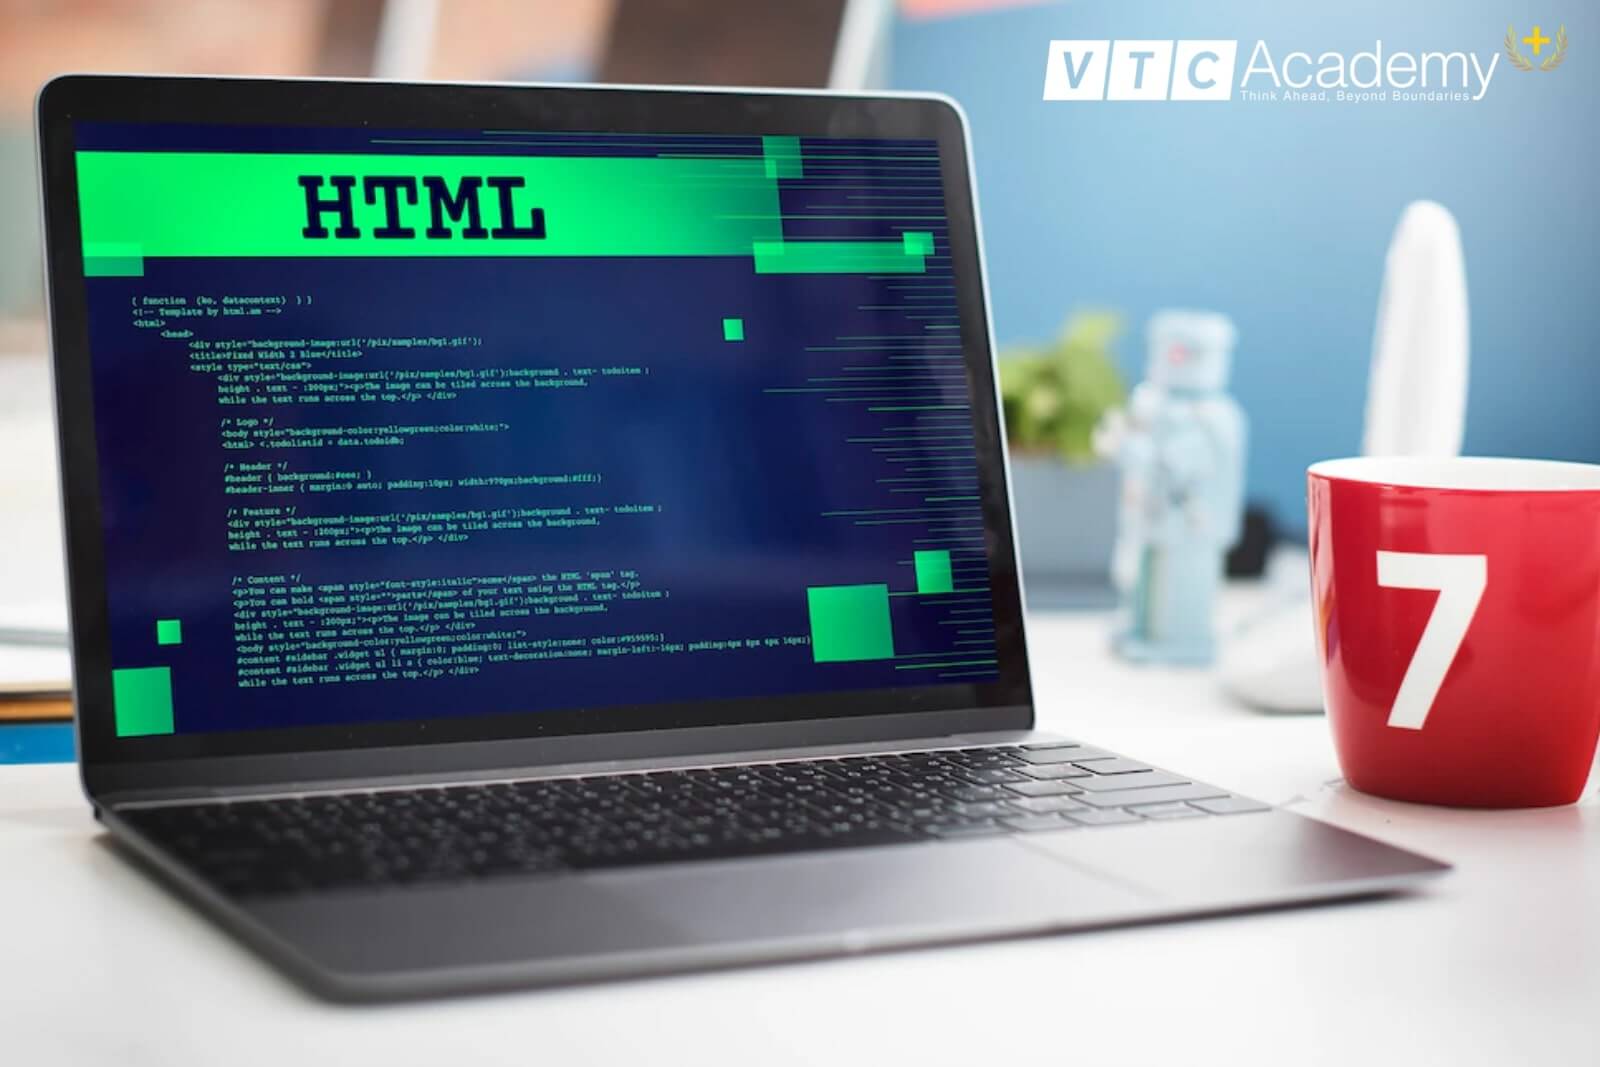 HTML là ngôn ngữ lập trình cơ bản cho các trang web. Nó cho phép bạn chỉnh sửa, định dạng và tạo ra nội dung cho trang web của mình. Hãy xem hình ảnh để khám phá thêm về cách sử dụng HTML và làm thế nào để thiết kế trang web chuyên nghiệp.